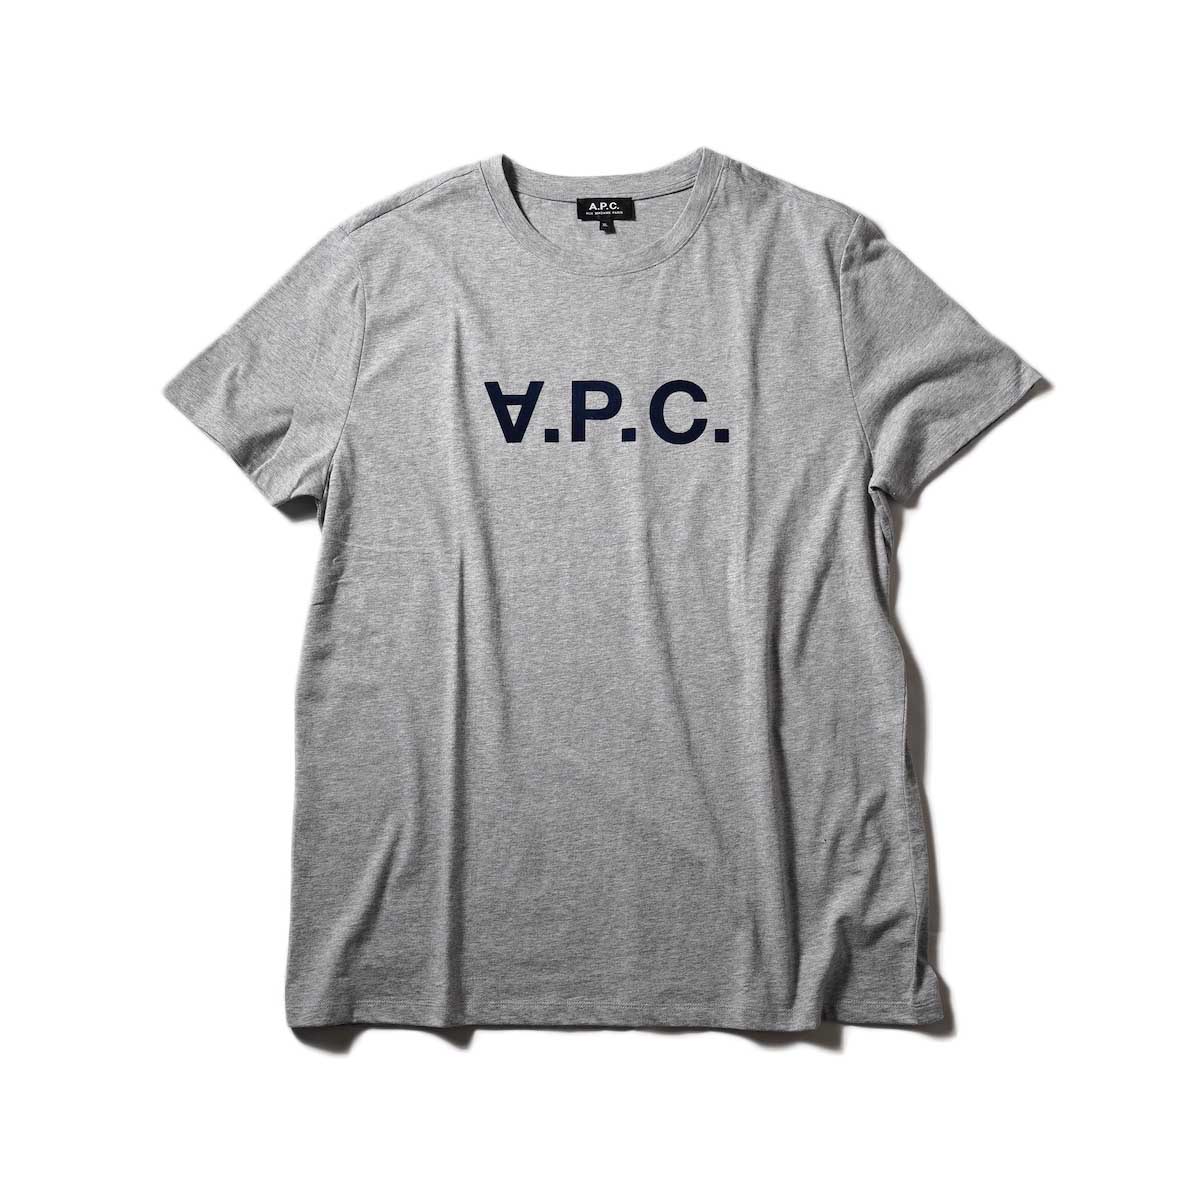 A.P.C. / VPC カラーTシャツ (Heather Gray)正面